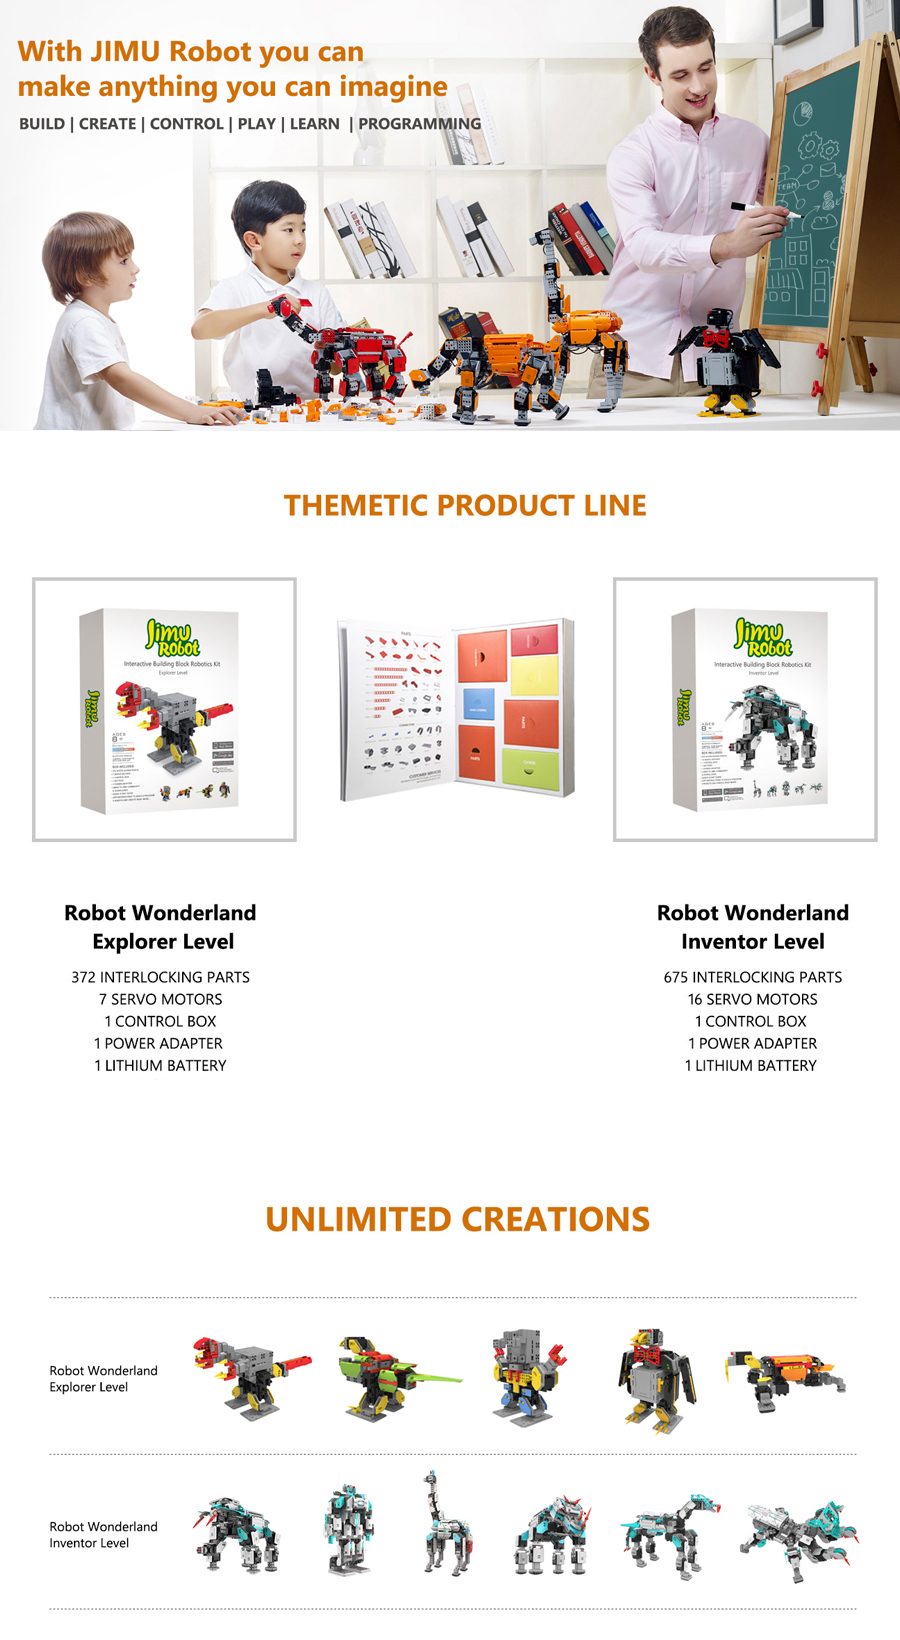 UBTECH-Jimu-3D-Programmable-Creativity-DIY-Robot-Kit-50-Coupon-Code-BGYBX50-1034024-3